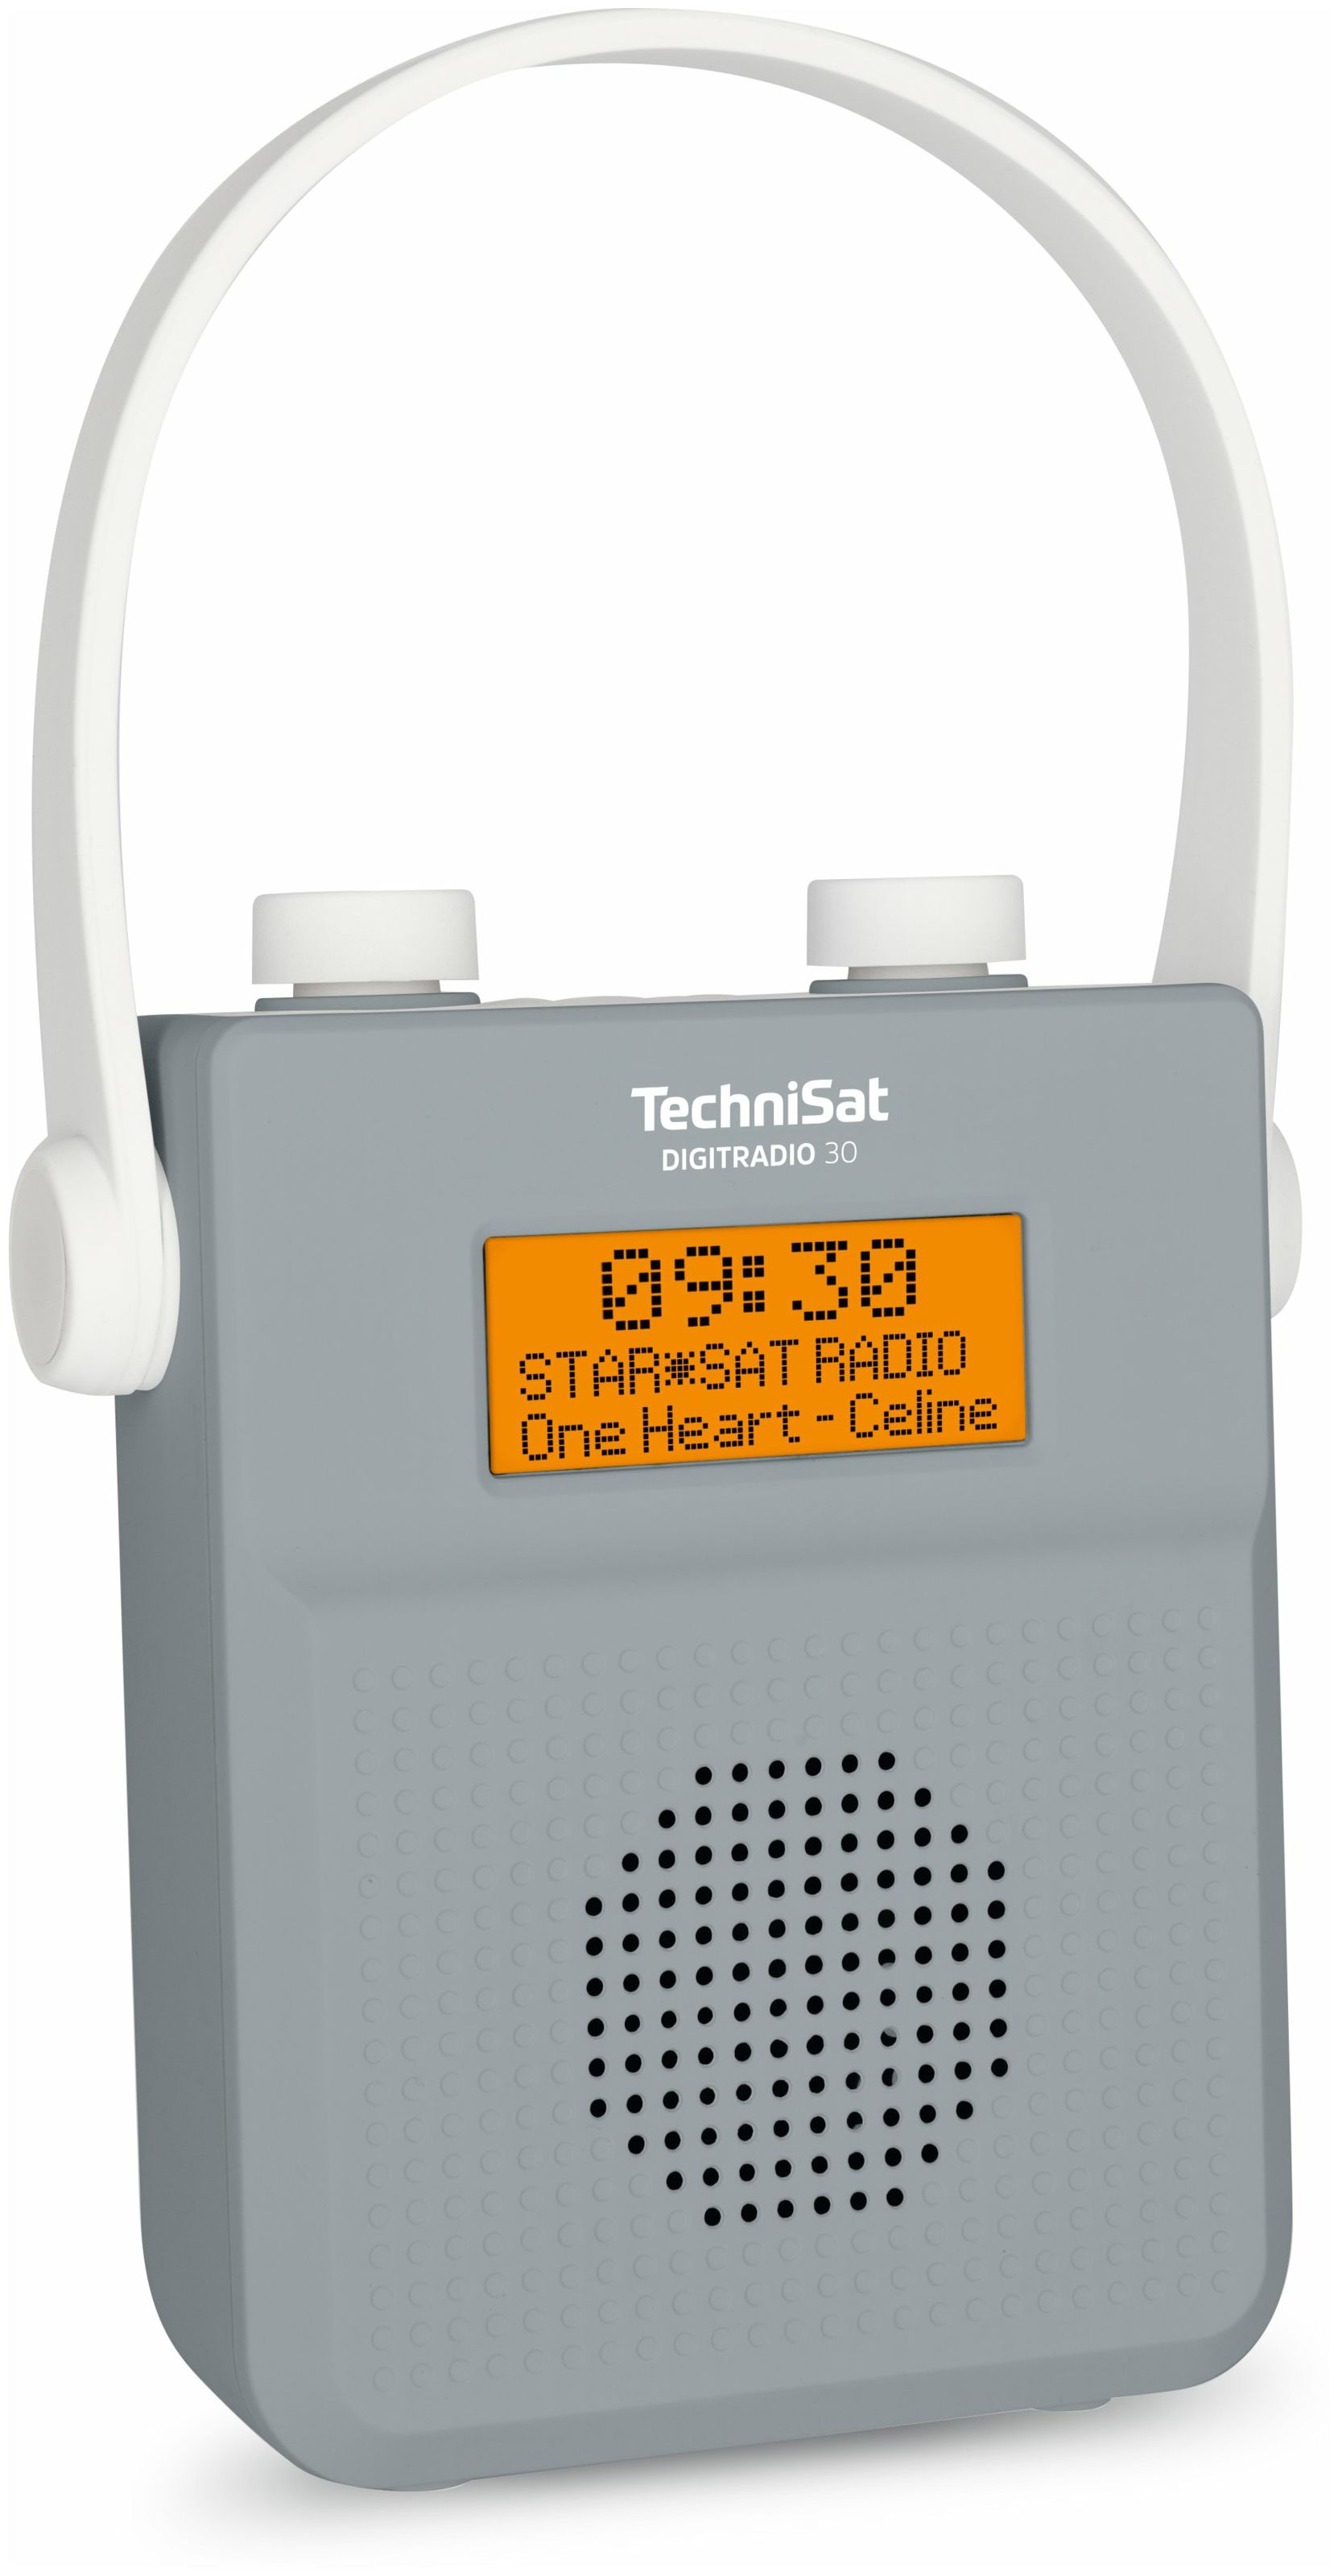 Digitradio expert FM 30 TechniSat von Bluetooth Technomarkt IPX5 (Grau) Radio DAB+, Tragbar